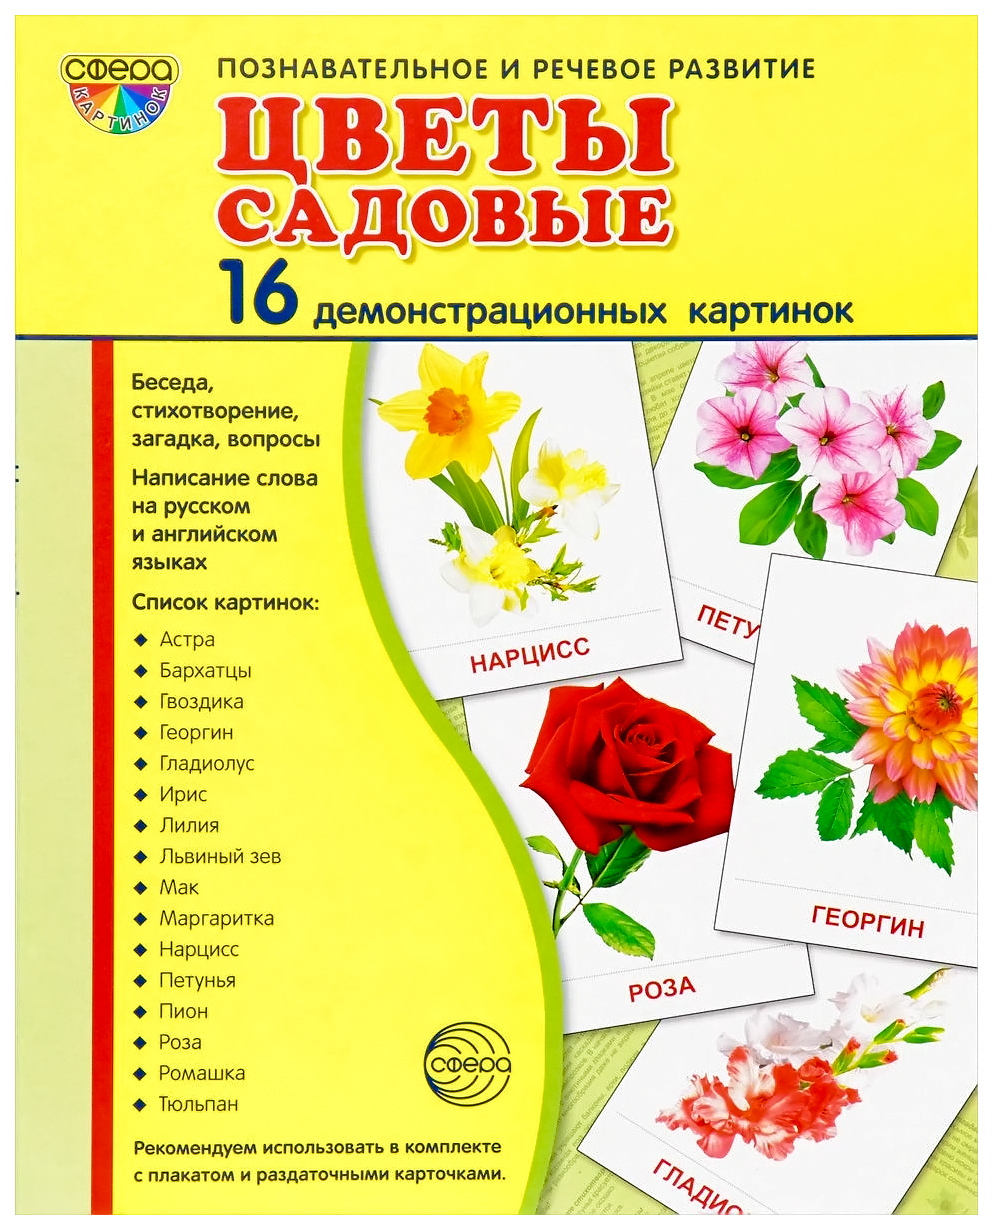 фото Сфера тц демонстрационные картинки супер цветы садовые (16 раздаточных карточек с тексто